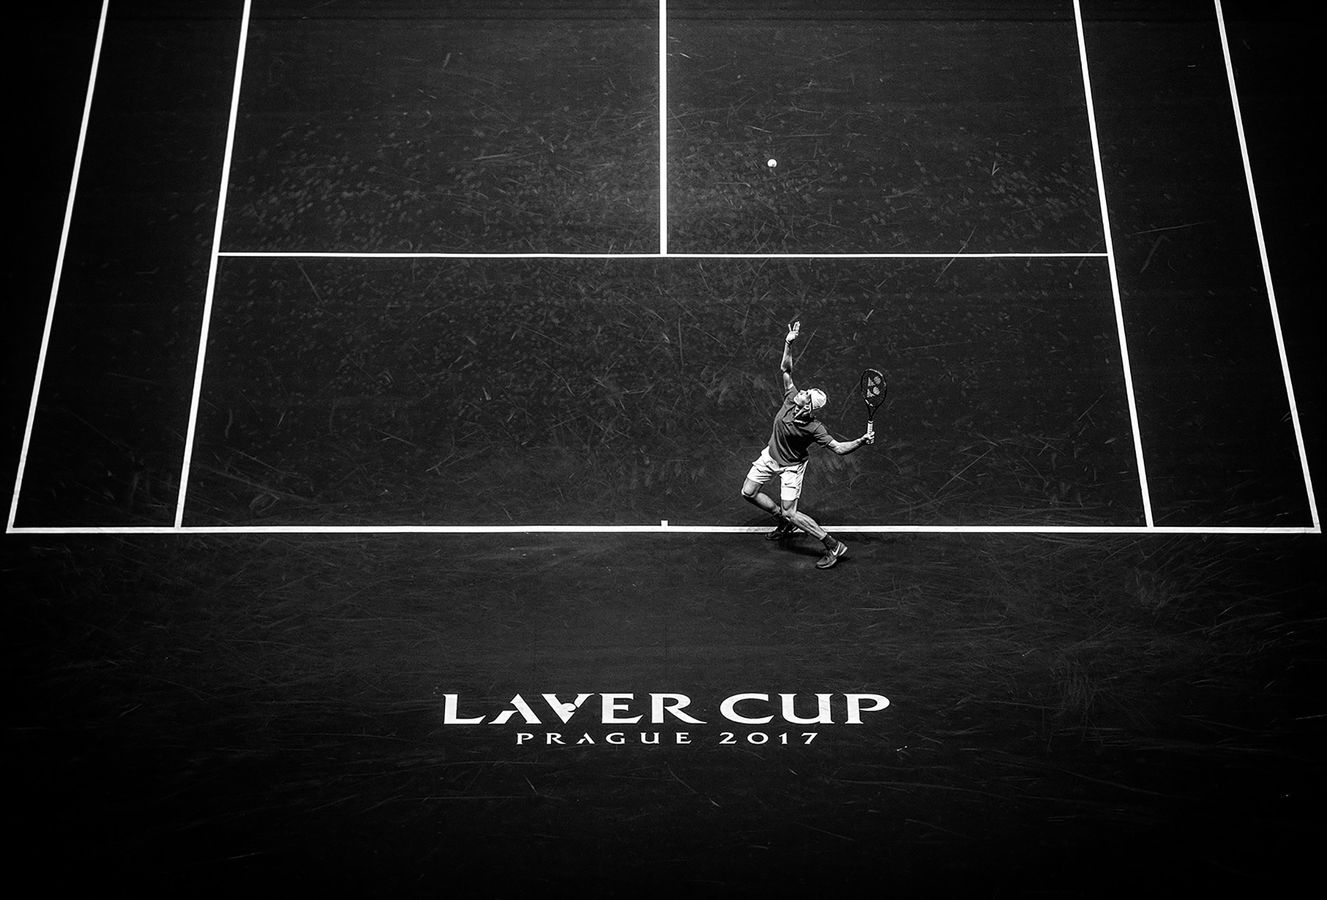 Laver Cup 2017 Prague